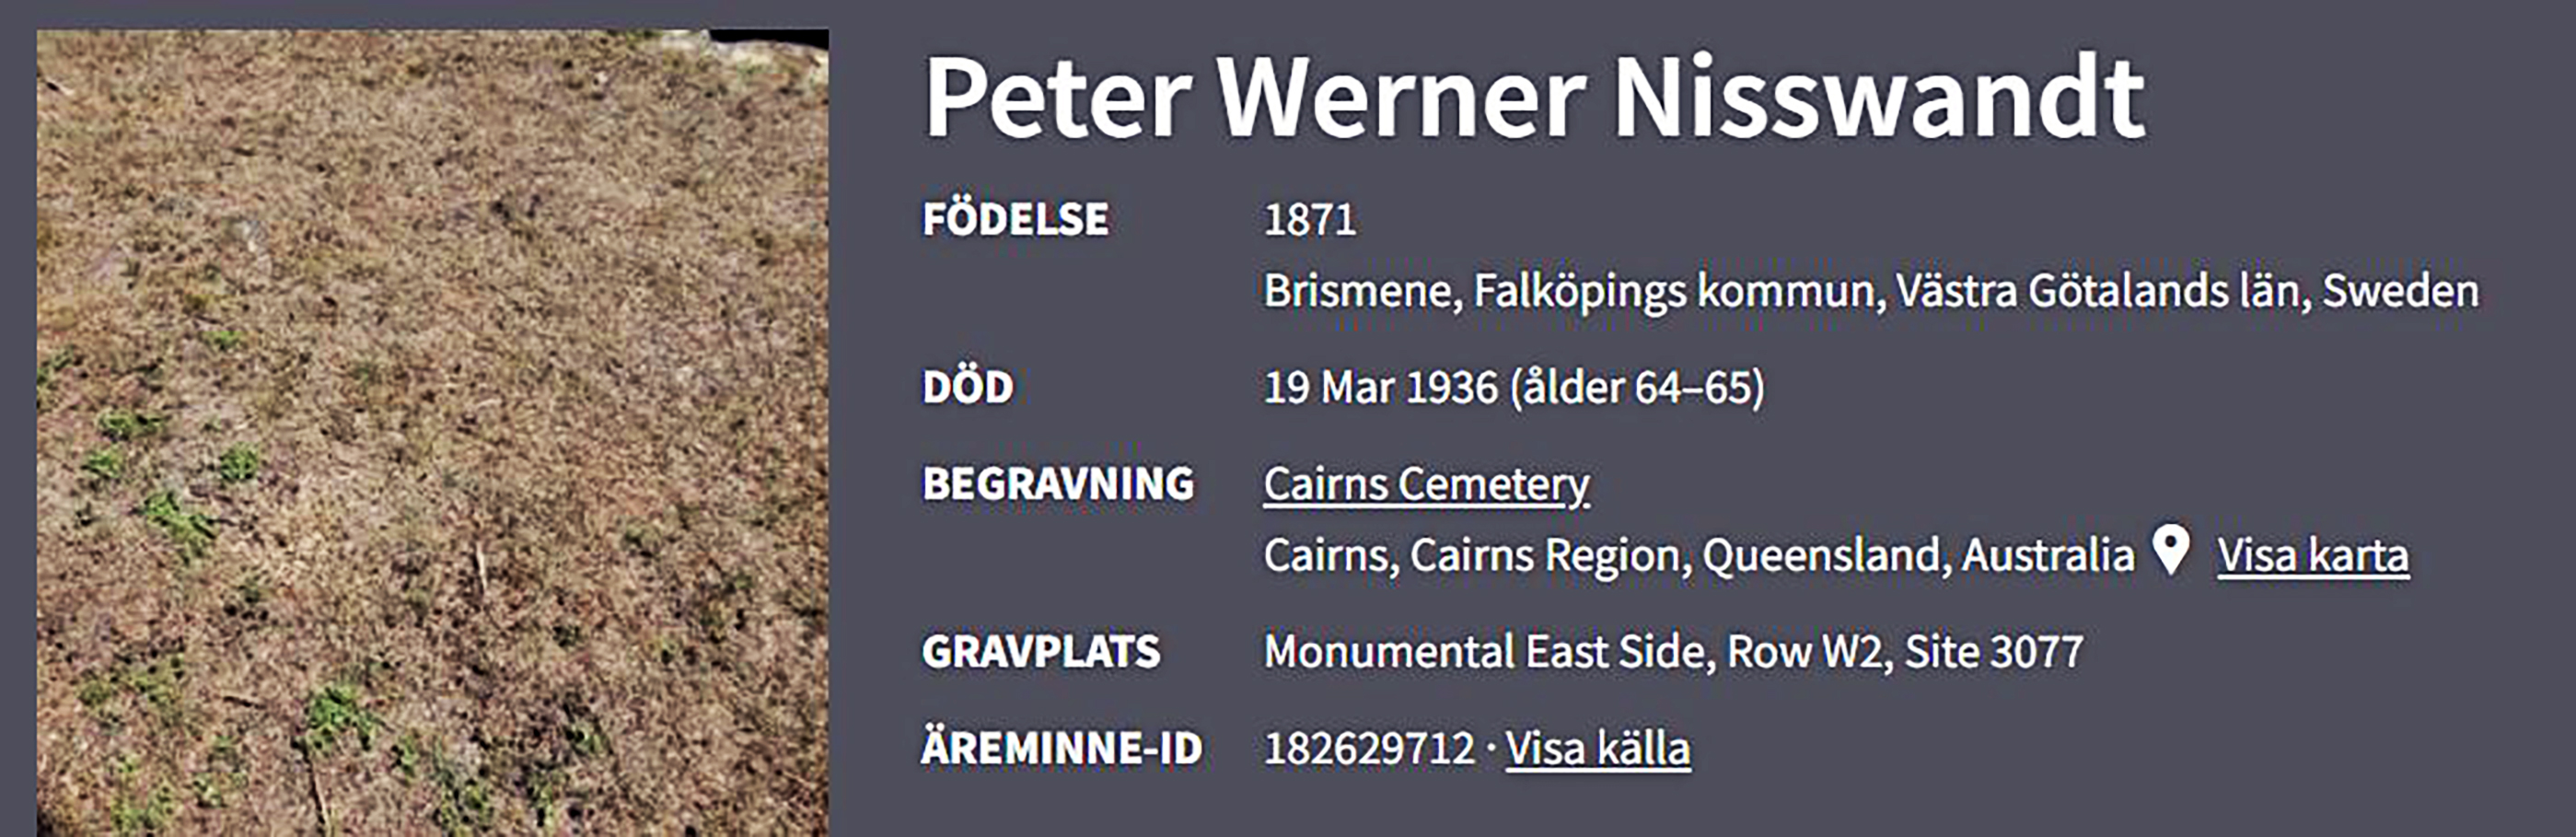 FAG Peter Werner Nisswandt